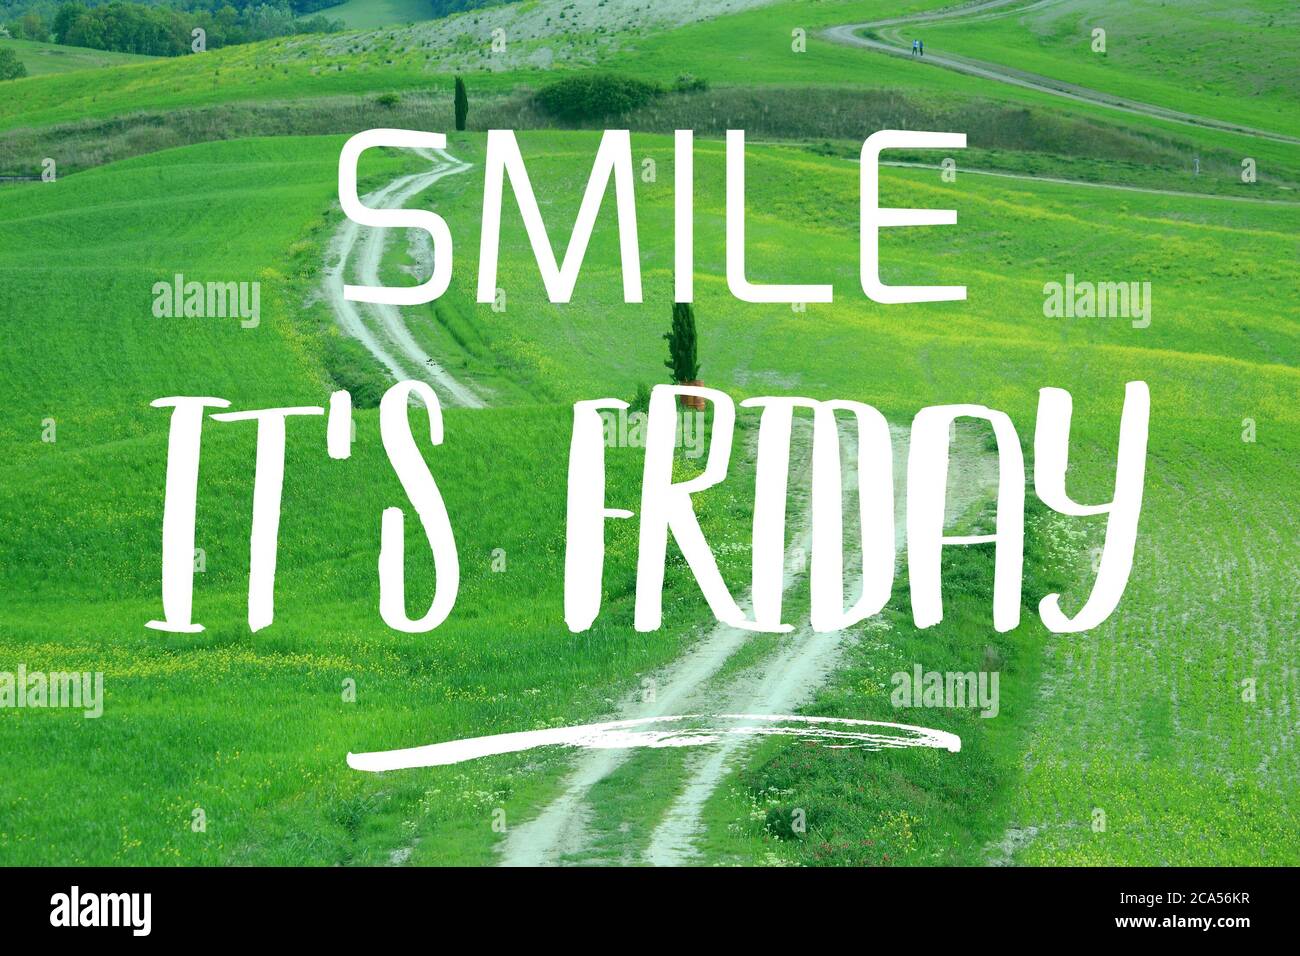 La sonrisa es Viernes - banner motivacional de medios sociales. Foto de stock